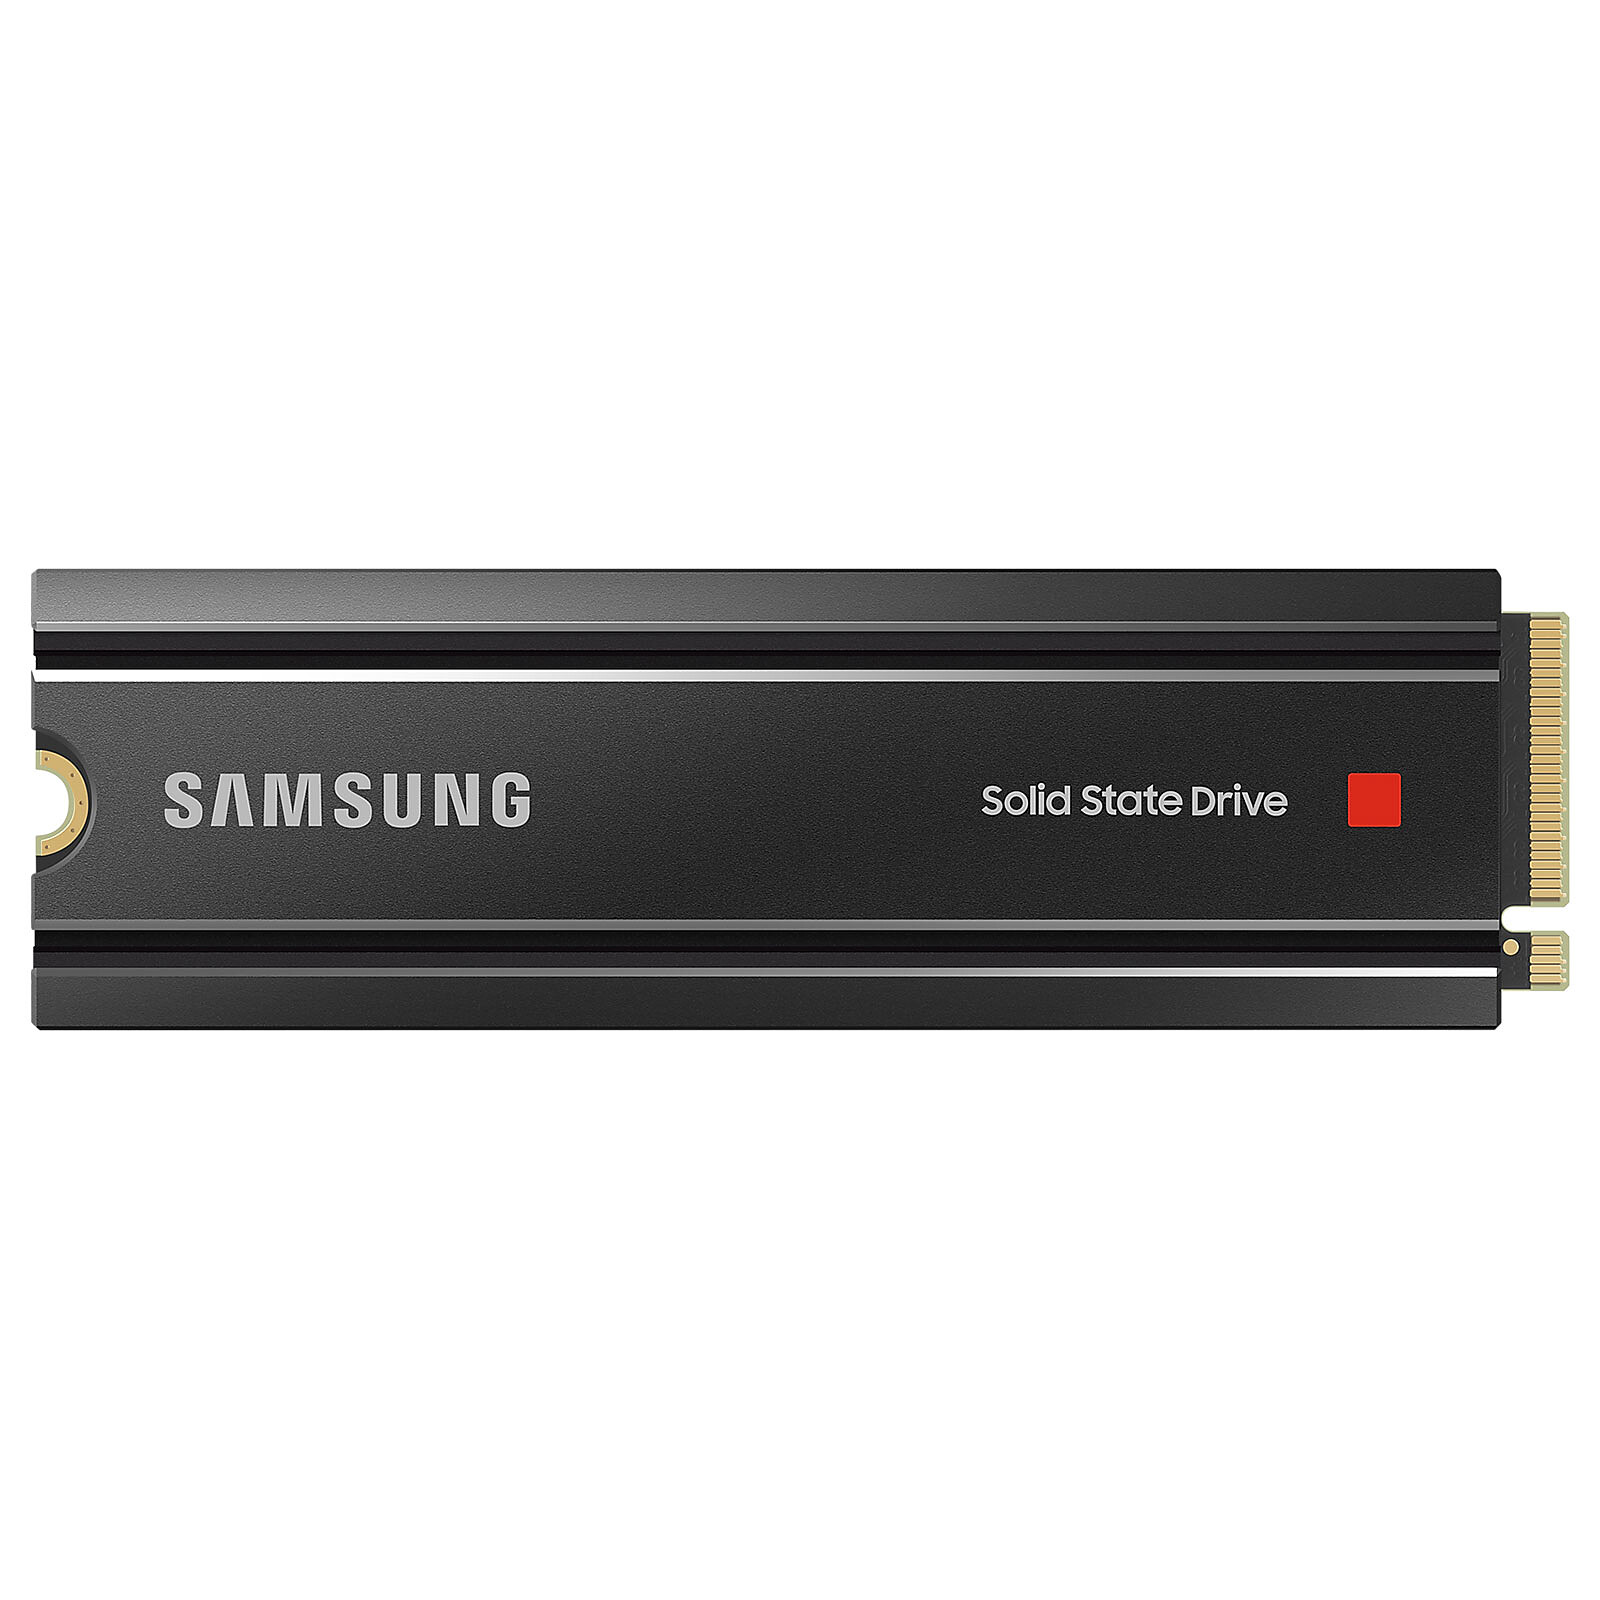 Le dissipateur thermique NVMe SSD 990 PRO de Samsung est